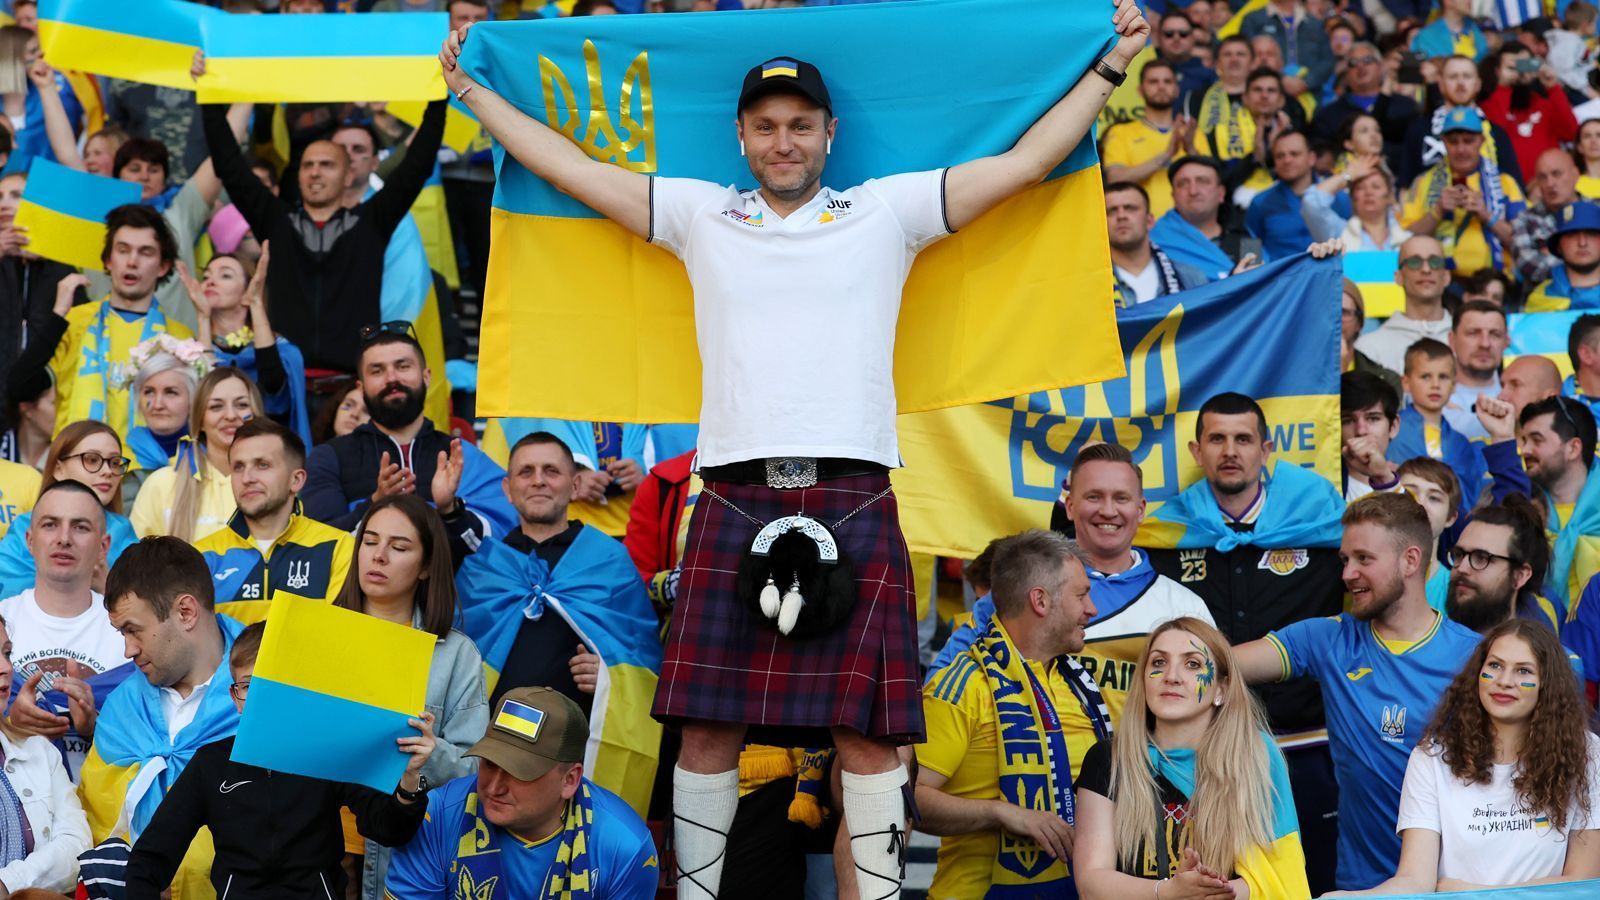 
                <strong>Ukrainische Party vor dem Hampden Park</strong><br>
                Die ukrainische Nationalmannschaft bestritt am Mittwochabend im Hampden Park von Glasgow das Halbfinal-Playoff-Spiel der WM-Qualifikation gegen Schottland. Die Ukrainer wurden von tausenden Landsleute empfangen und gefeiert. Dieser Fan kam mit Schottenrock und Ukraine-Flagge ins Stadion.
              